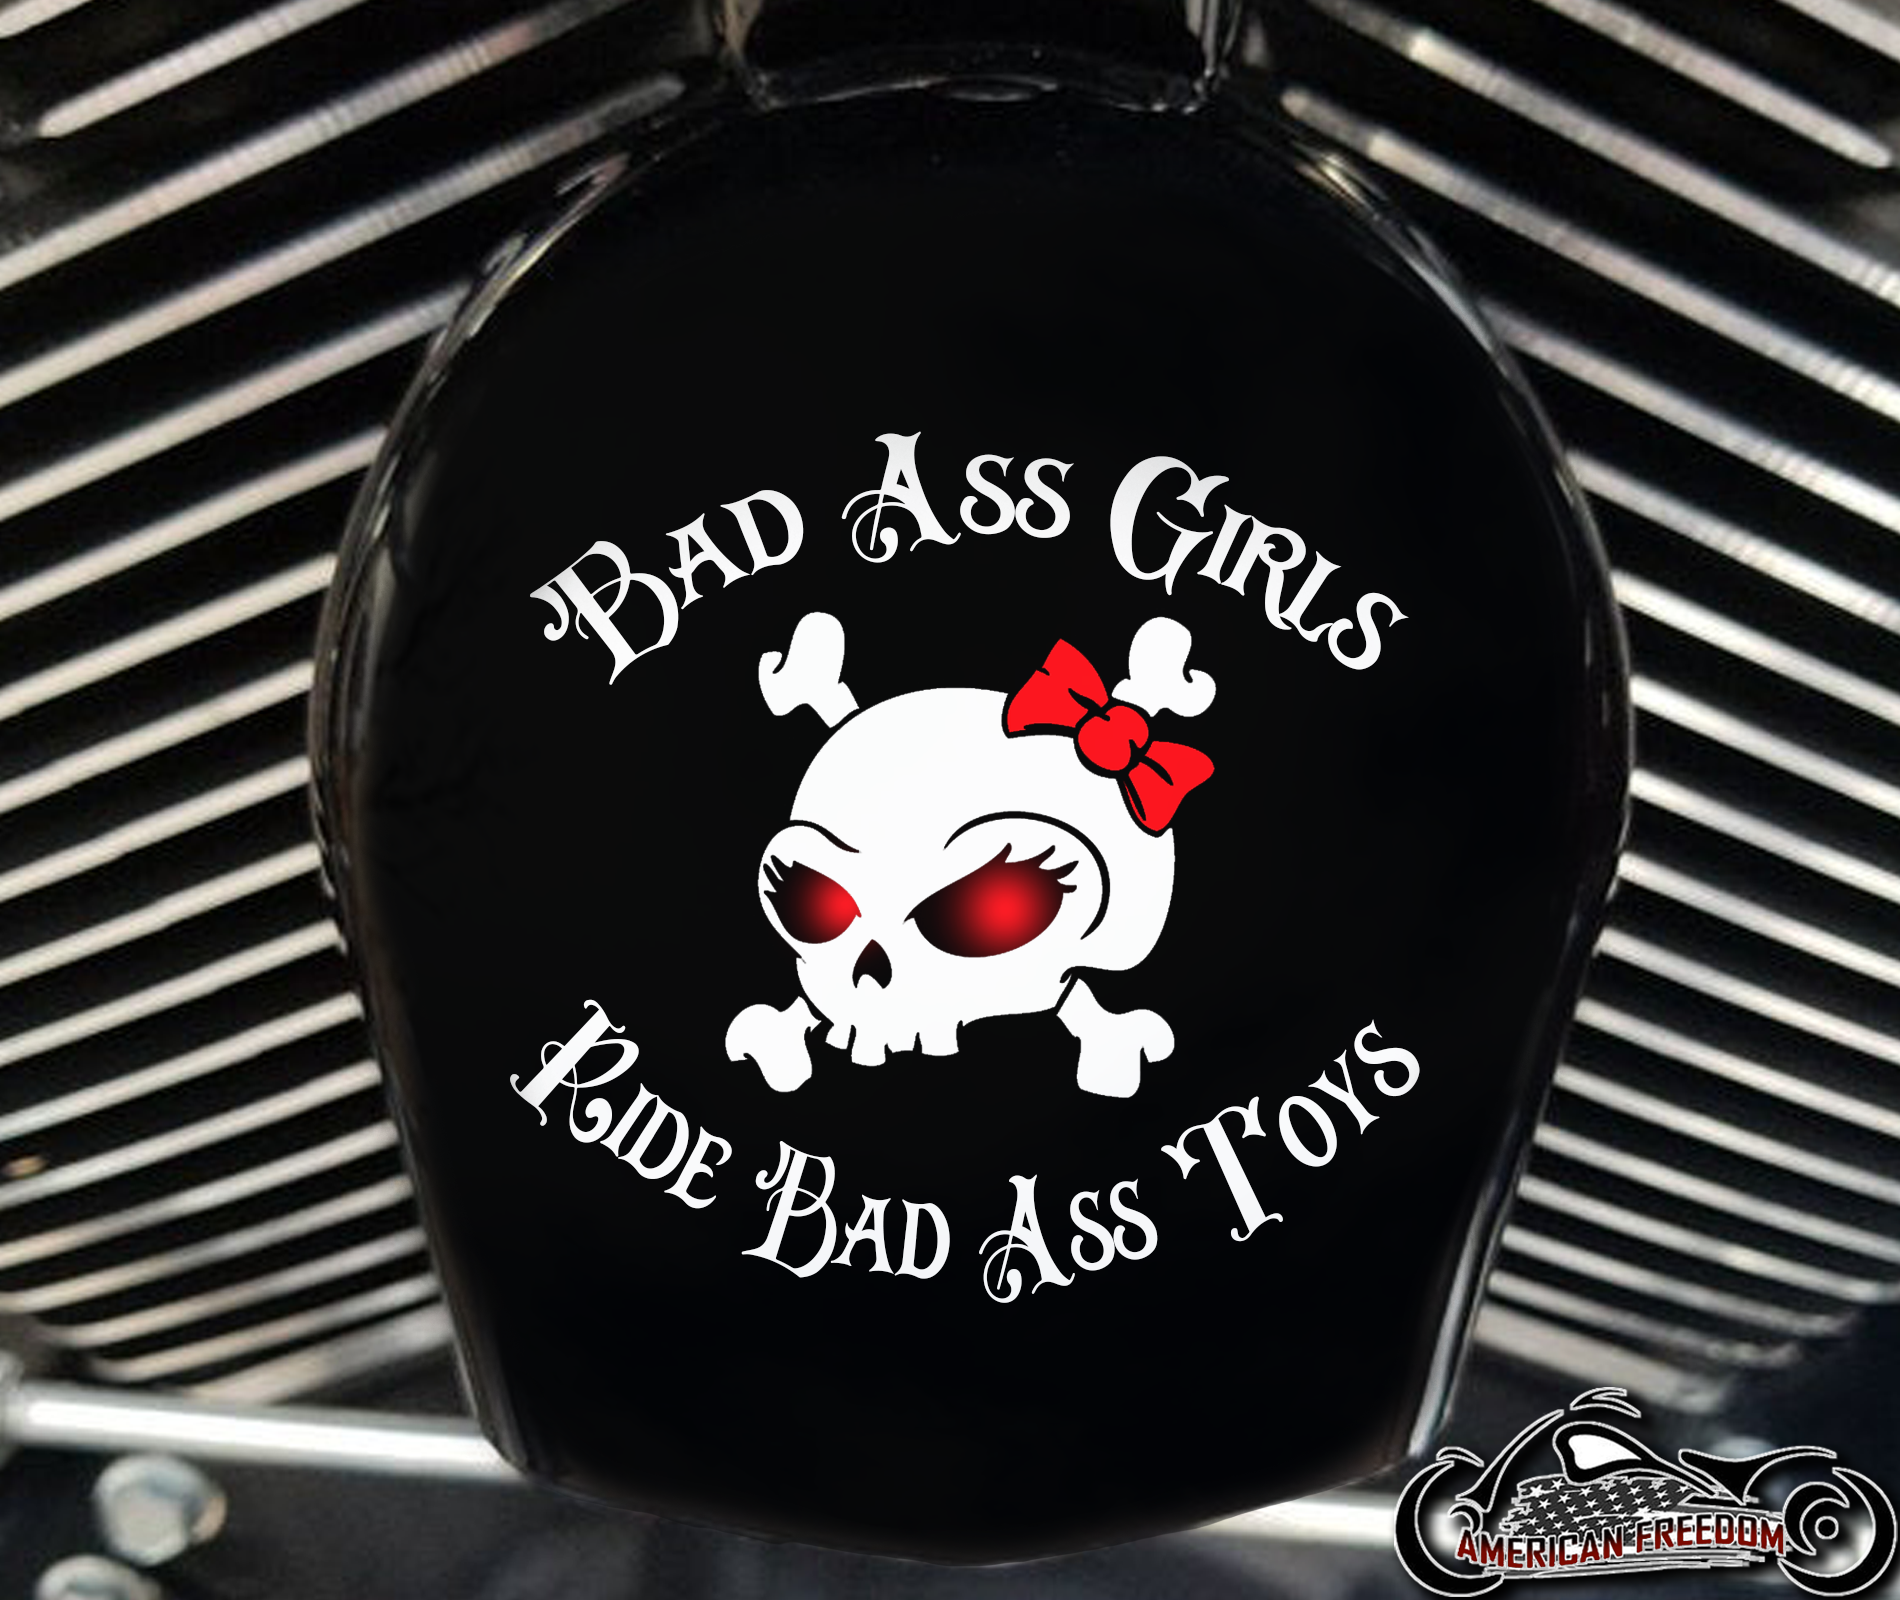 Custom Horn Cover - Bad Ass Girls Red